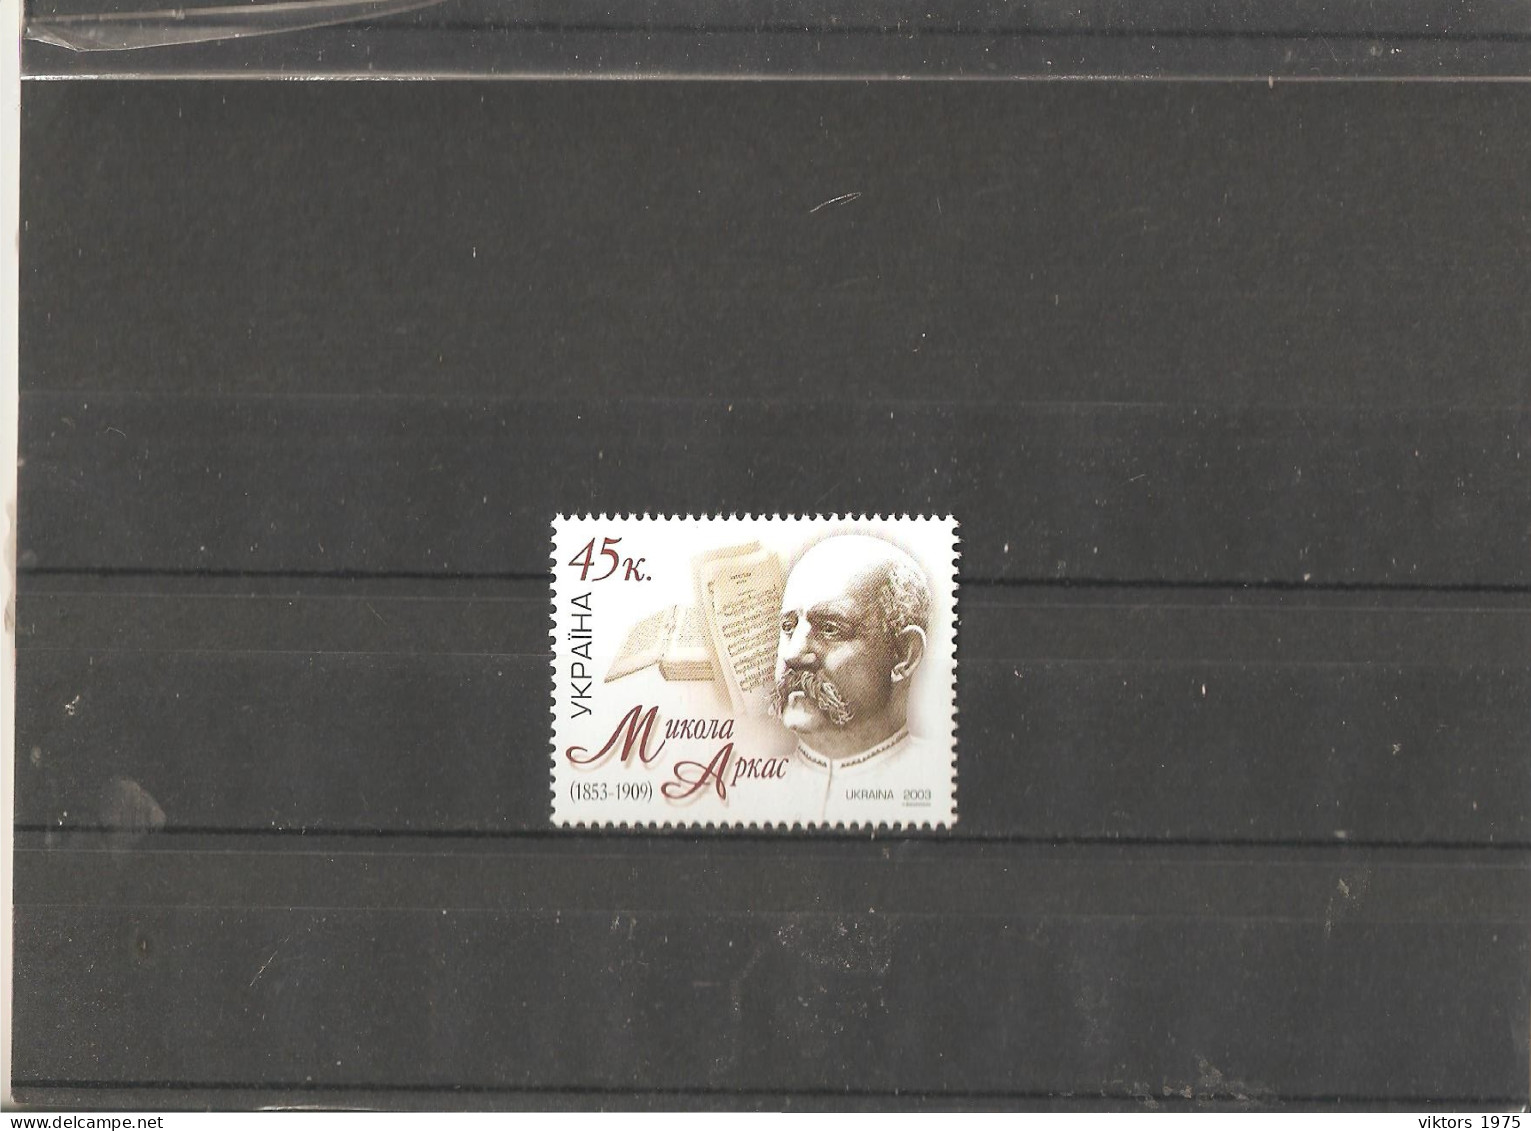 MNH Stamp Nr.558 In MICHEL Catalog - Ukraine